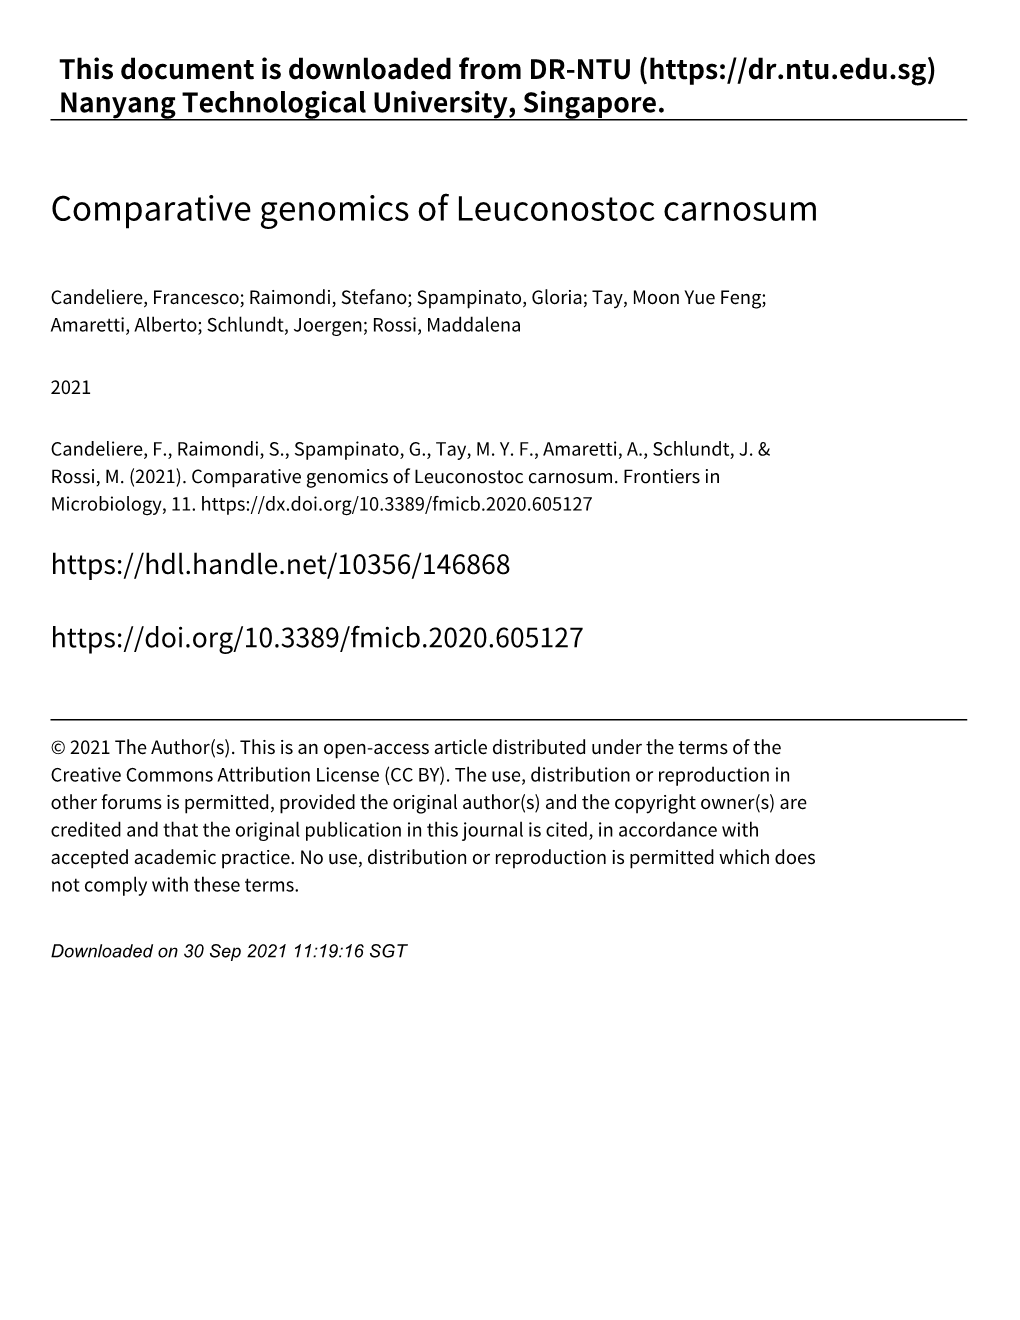 Comparative Genomics of Leuconostoc Carnosum